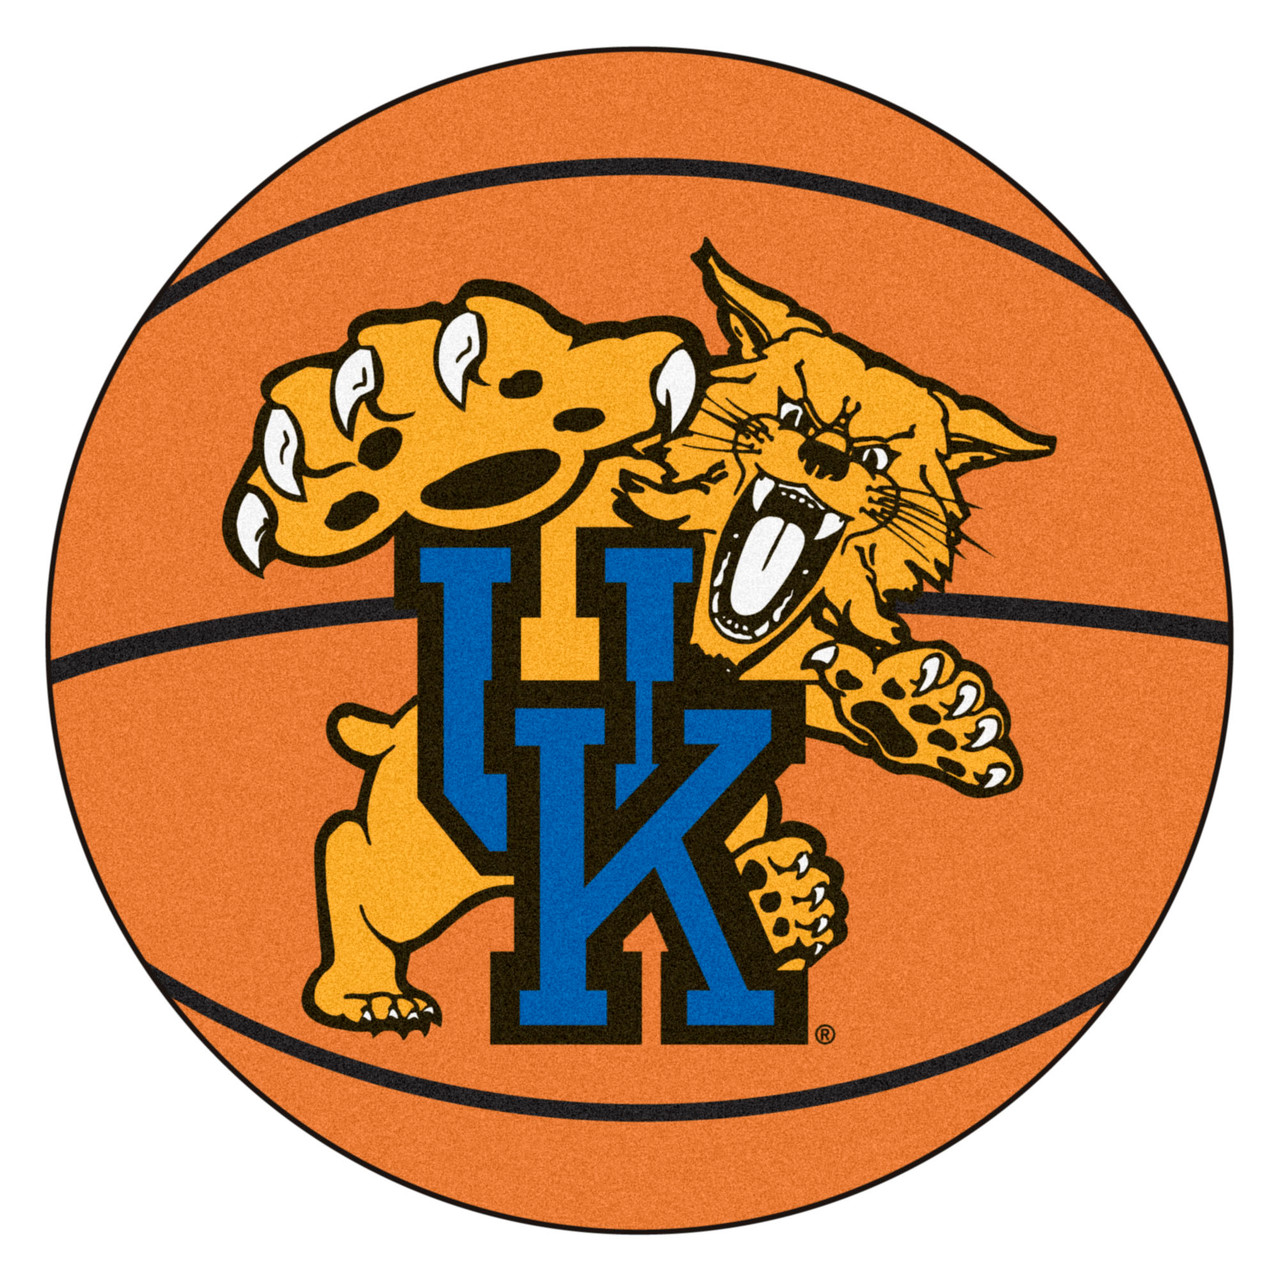 kentucky wildcats basketball logo